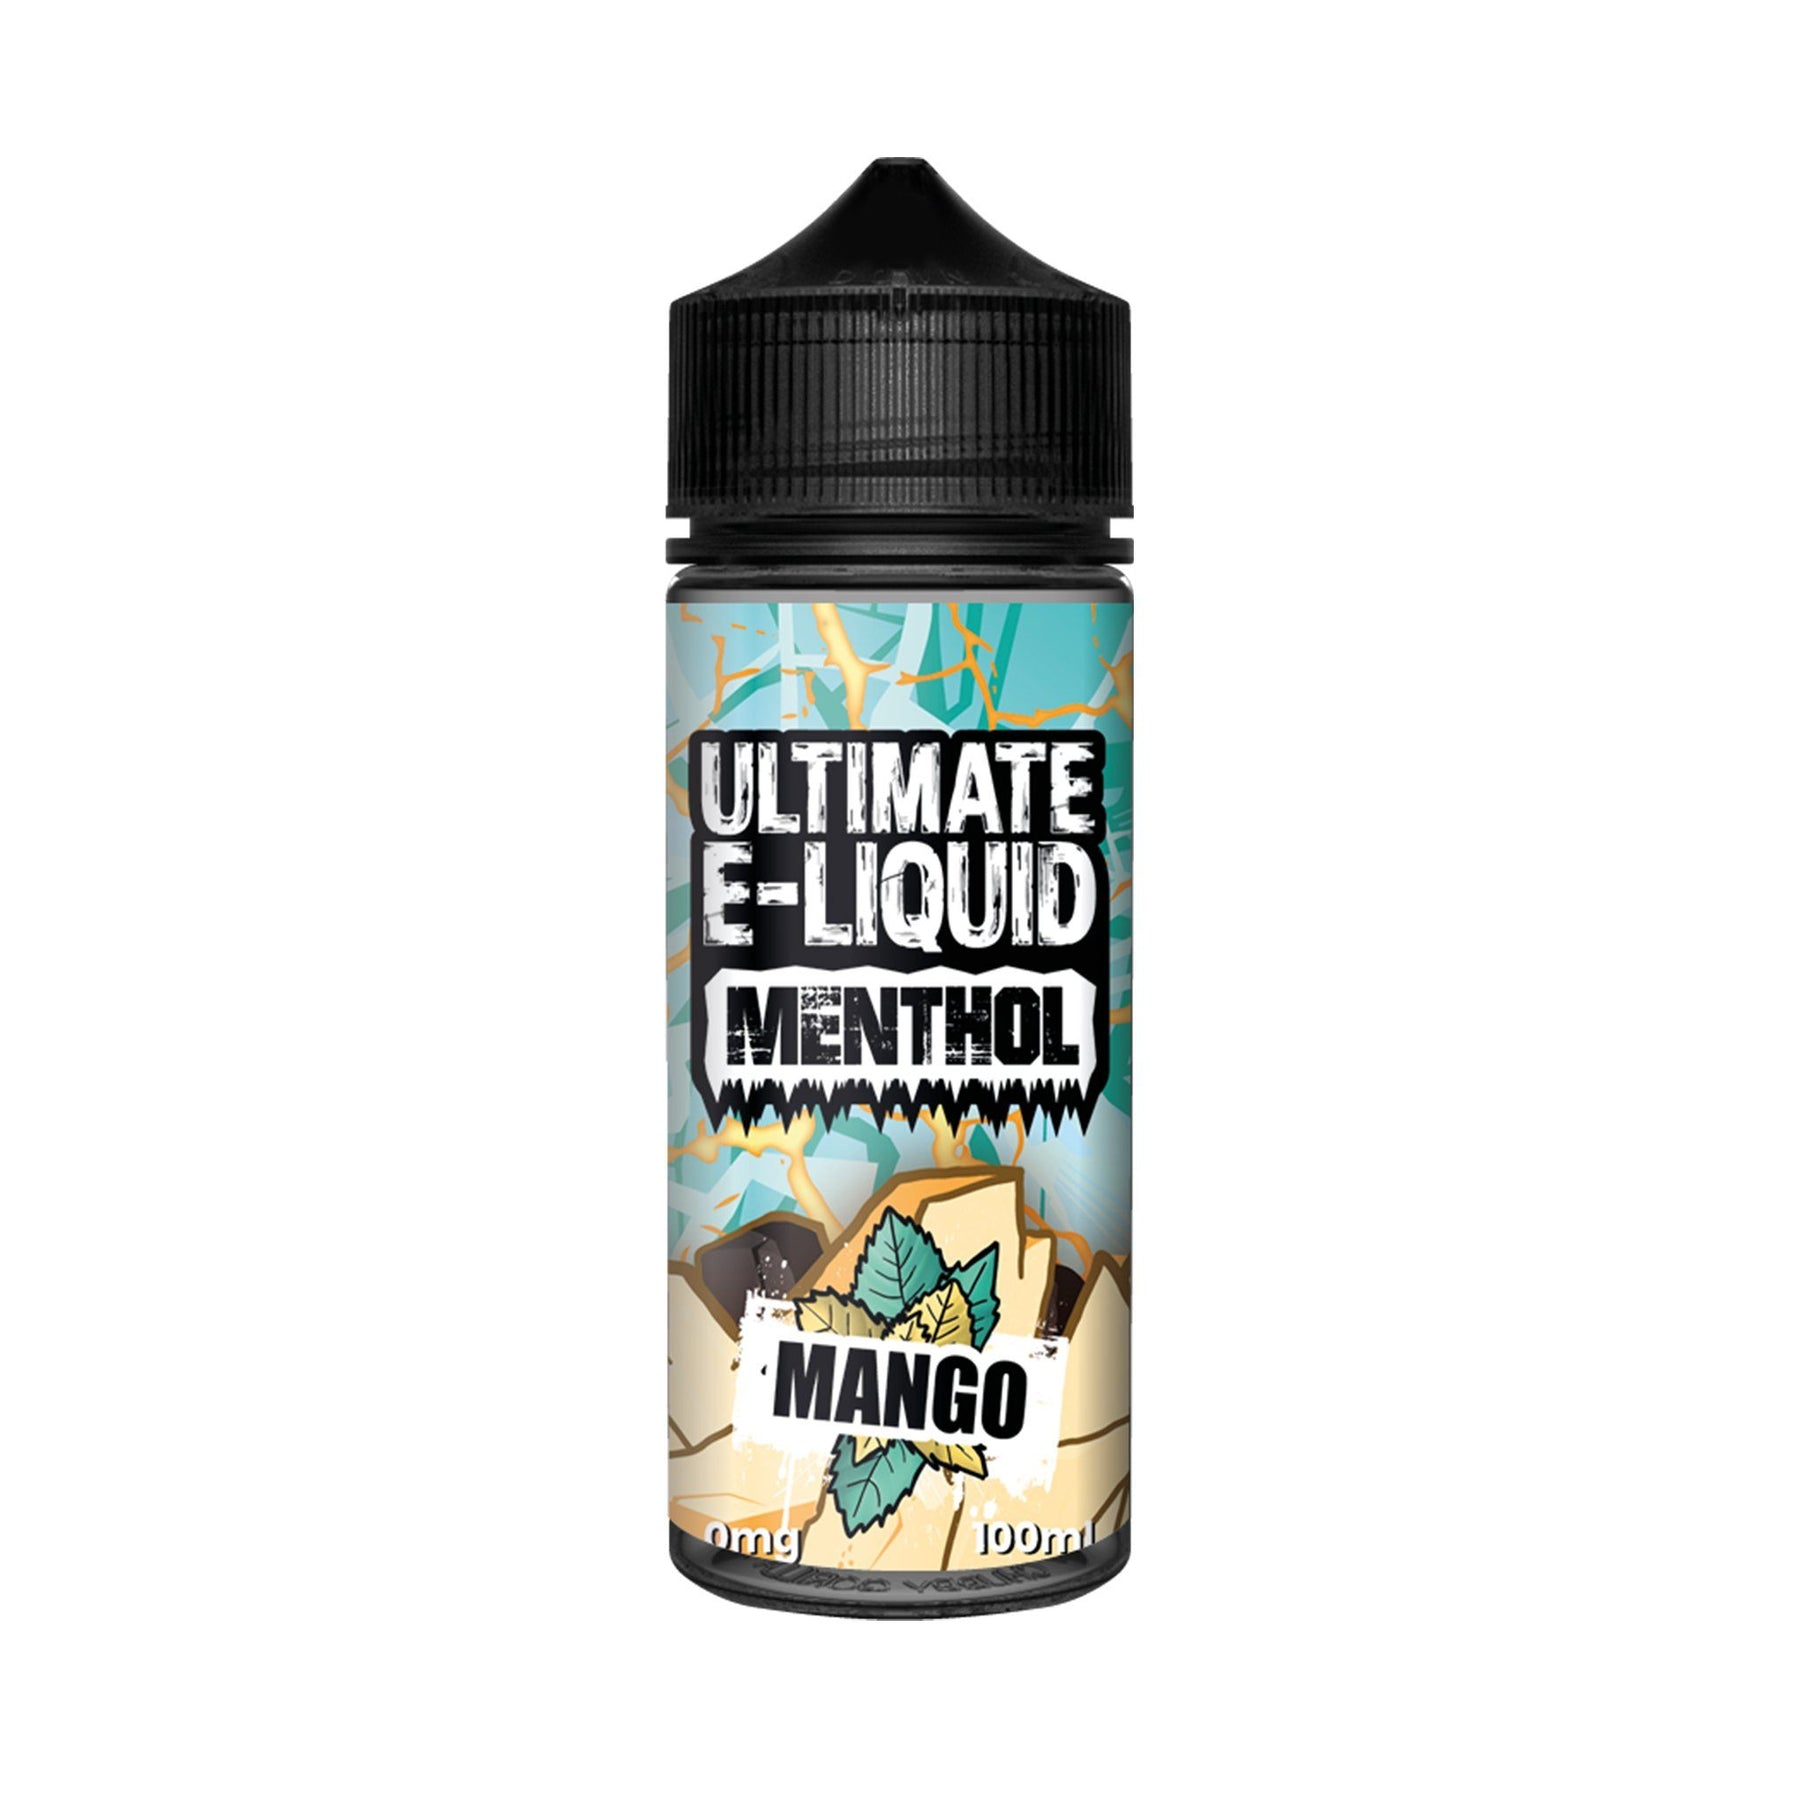 Ultimate E-Liquid Menthol Series Short Fill E-Liquids Mango